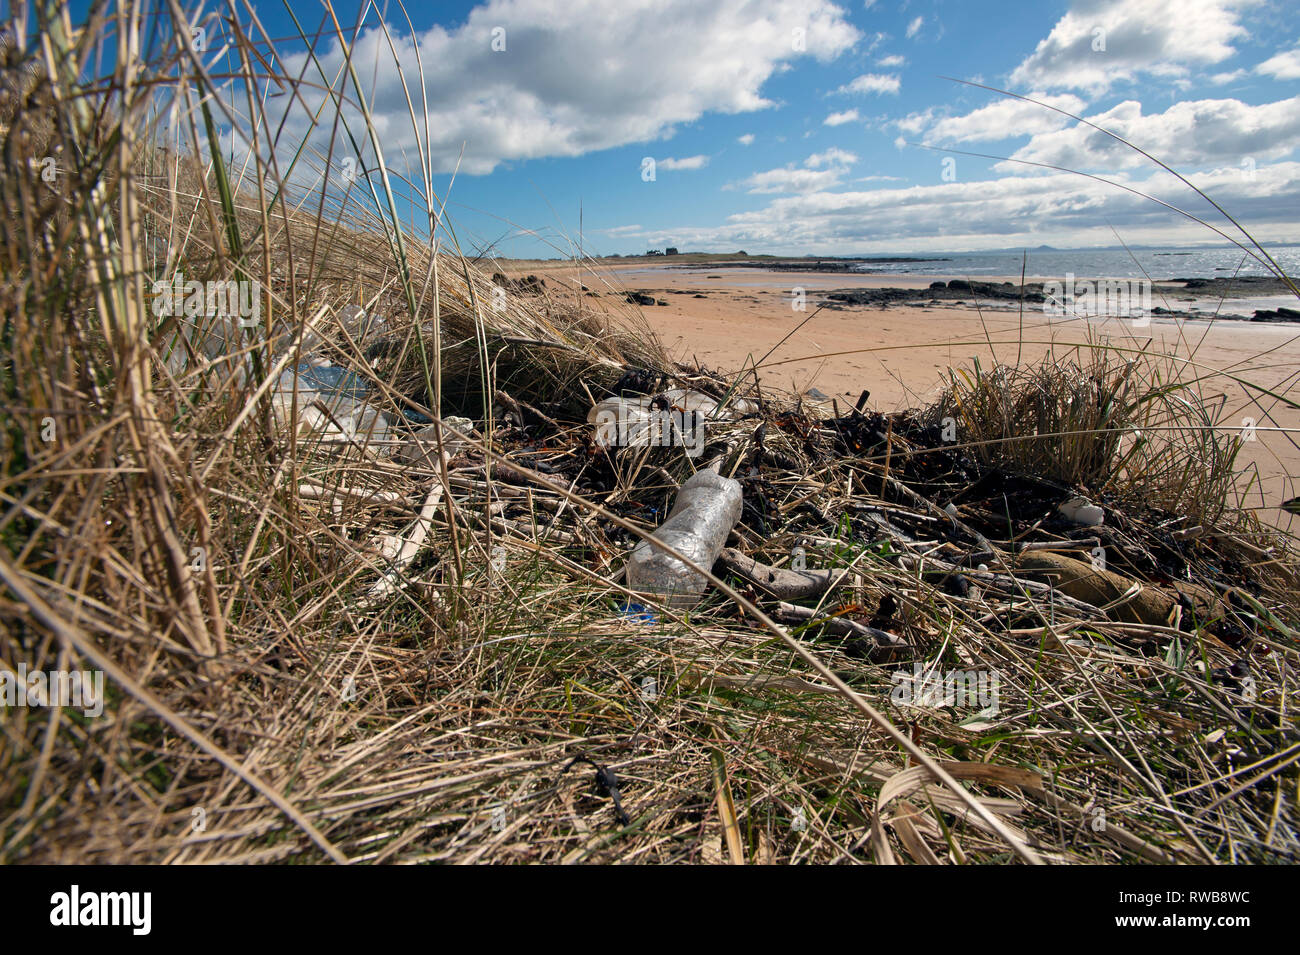 El pecio de plástico y desechos arrastrados hasta la playa de arena de la Bahía de Shell a Elie Fife Escocia Foto de stock